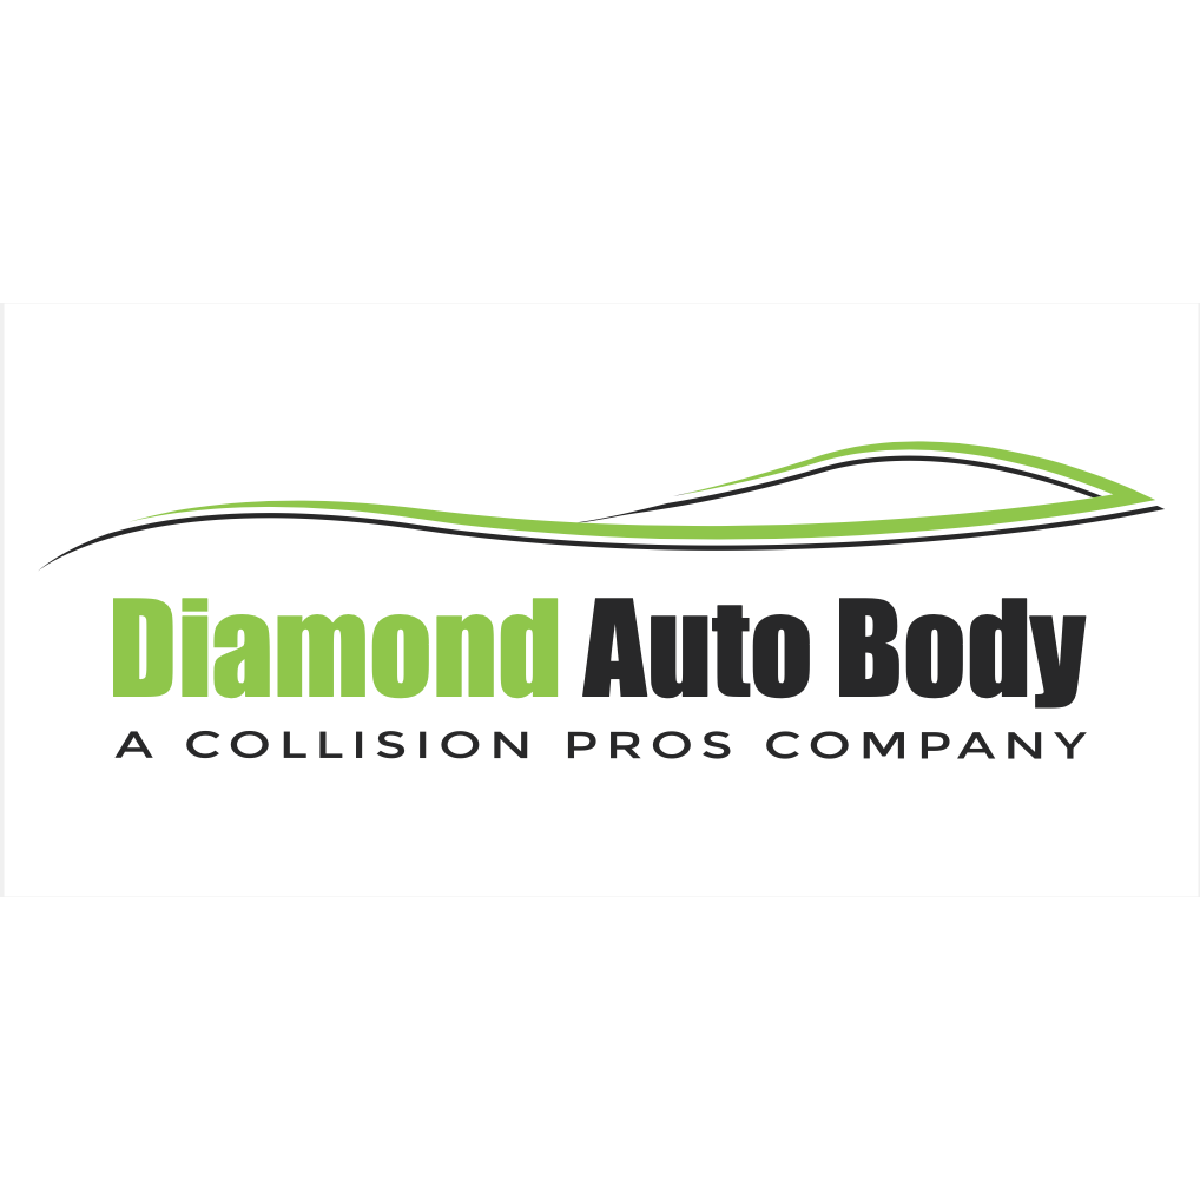 Diamond Auto Body - McCarran - Reno, NV 89502 - (775)446-7880 | ShowMeLocal.com